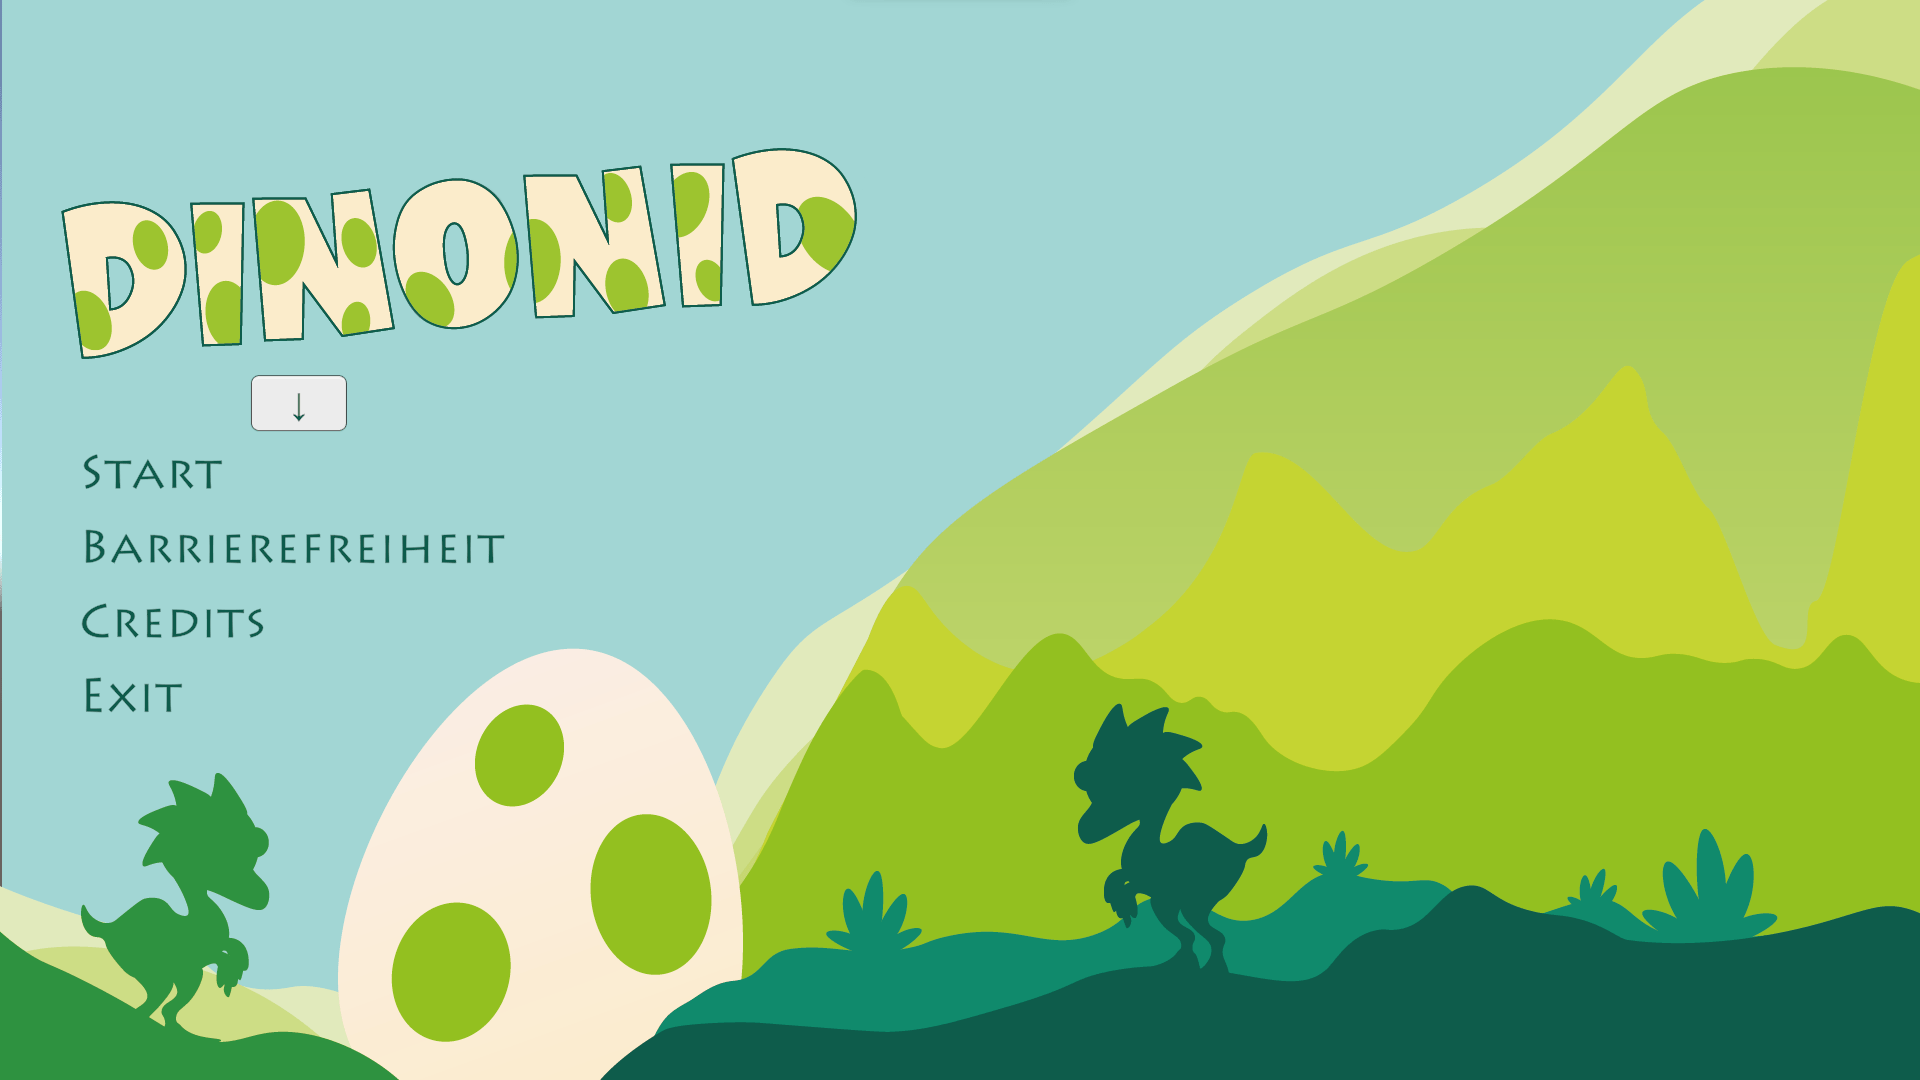 Das Spielmenü von Dinonid. Im Hintergrund stehen zwei Dino-Silhouetten, getrennt von einem riesigen Ei. Das Menü zeigt die Spieloptionen "Start, Barrierefreiheit, Credits und Exit".